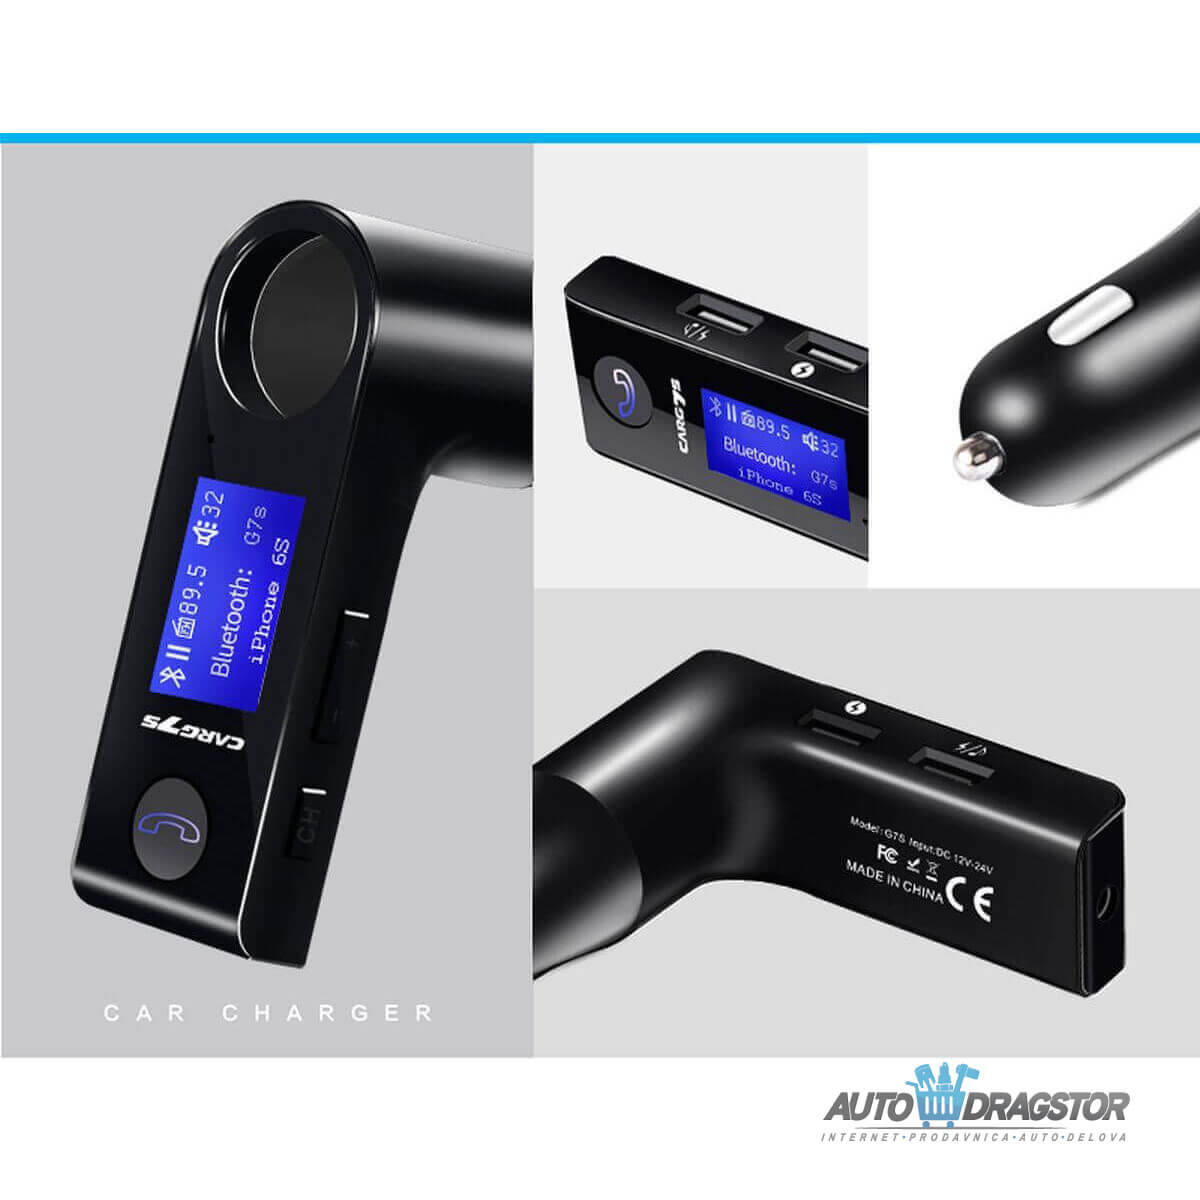 FM PREDAJNIK (TRANSMITER), USB PUNJAČ, 2 USB ULAZA, LCD EKRAN, BLUETOOTH 5.0, MP3/WMA 